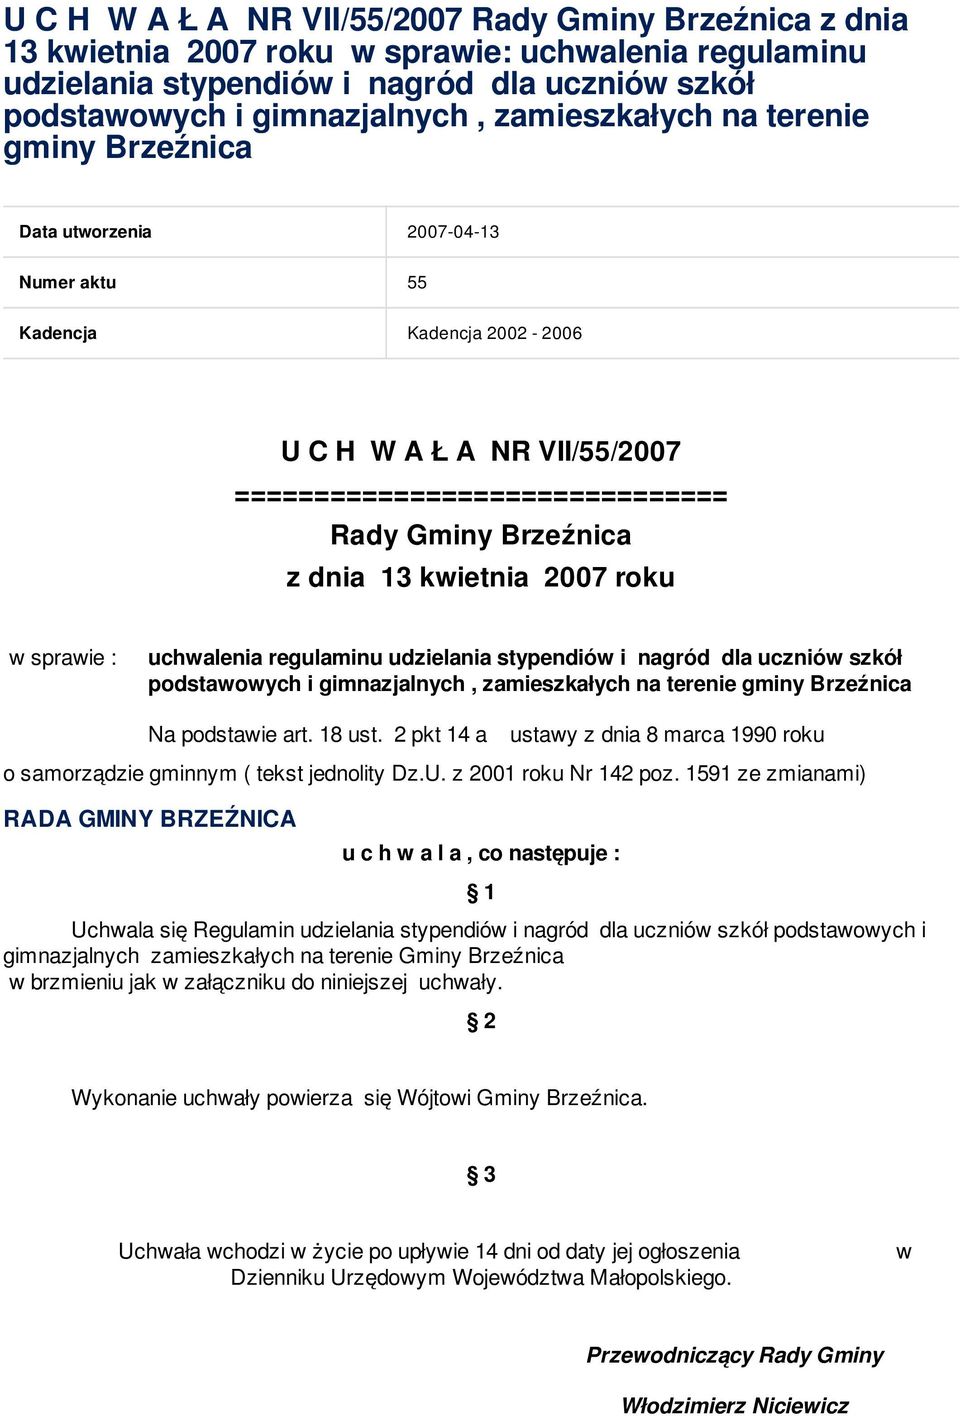 13 kwietnia 2007 roku w sprawie : uchwalenia regulaminu udzielania stypendiów i nagród dla uczniów szkół podstawowych i gimnazjalnych, zamieszkałych na terenie gminy Brzeźnica Na podstawie art.